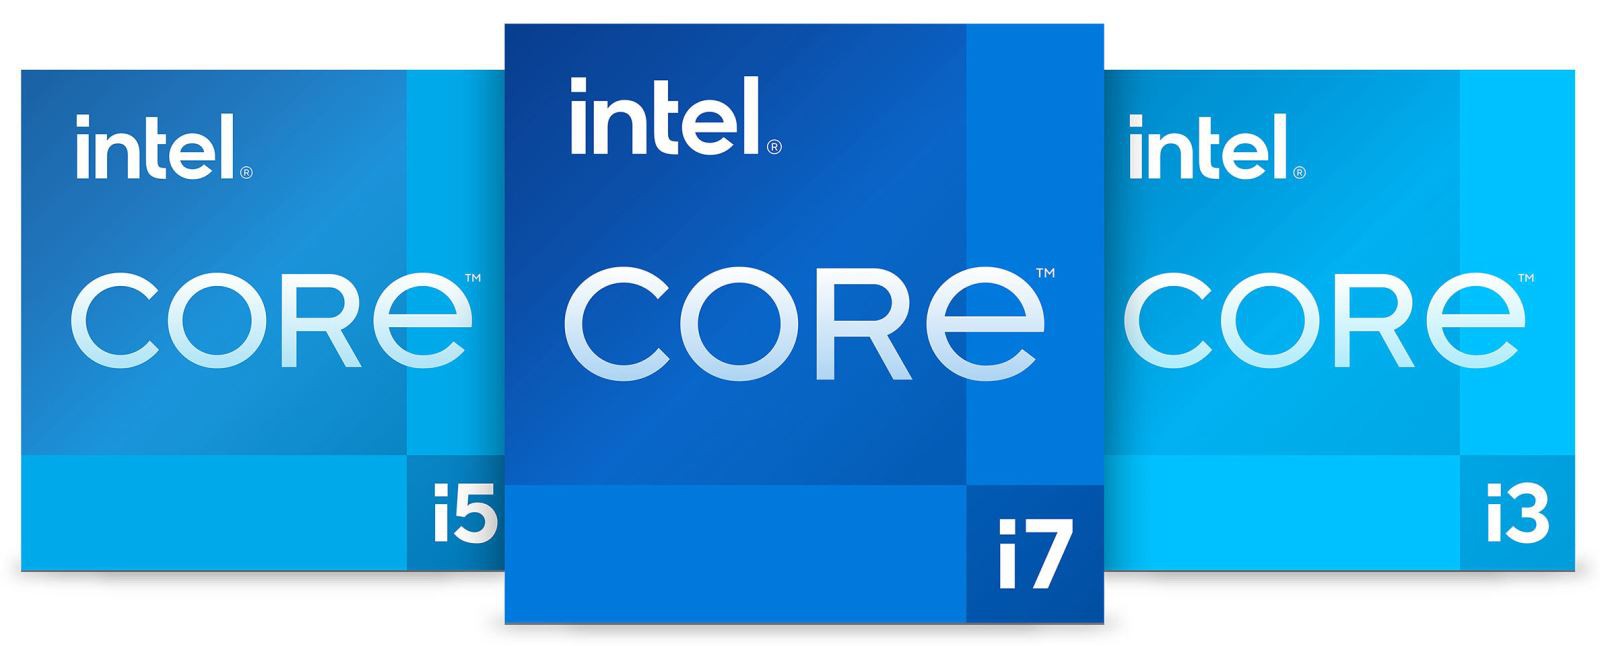 Intel Gen 11th – bước nhảy về hiệu năng đồ họa cho laptop thế hệ mới 10